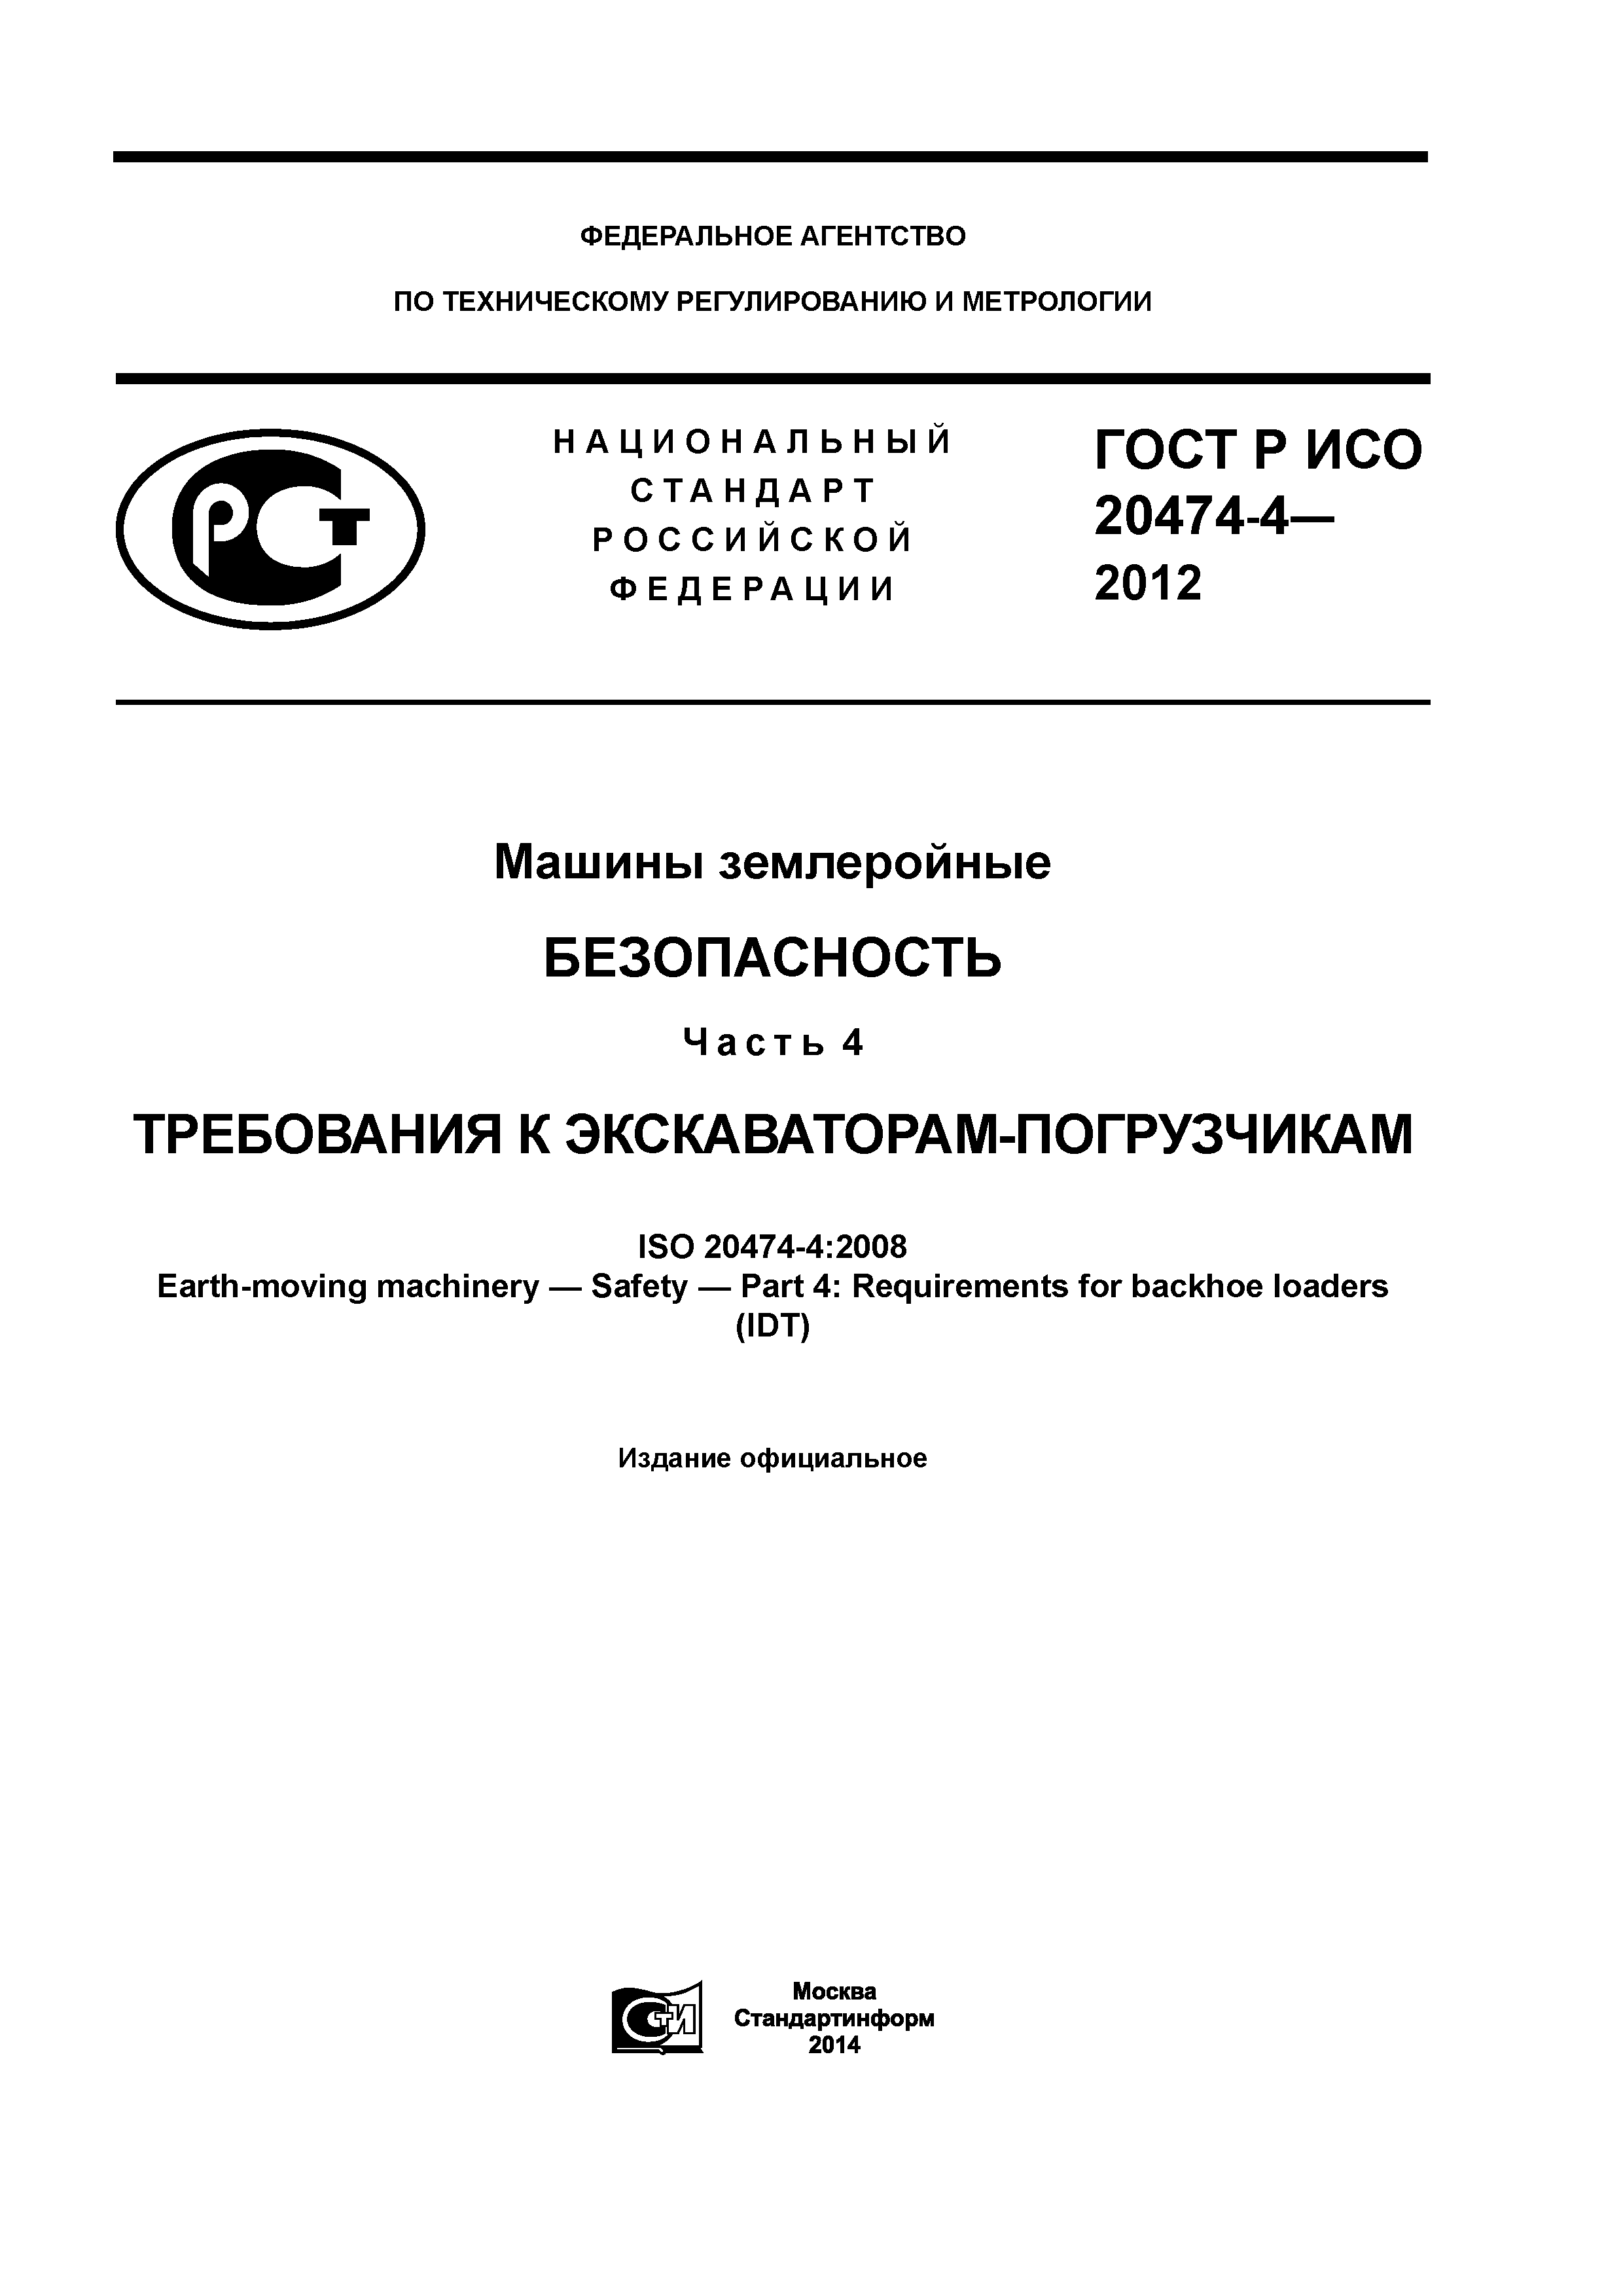 ГОСТ Р ИСО 20474-4-2012